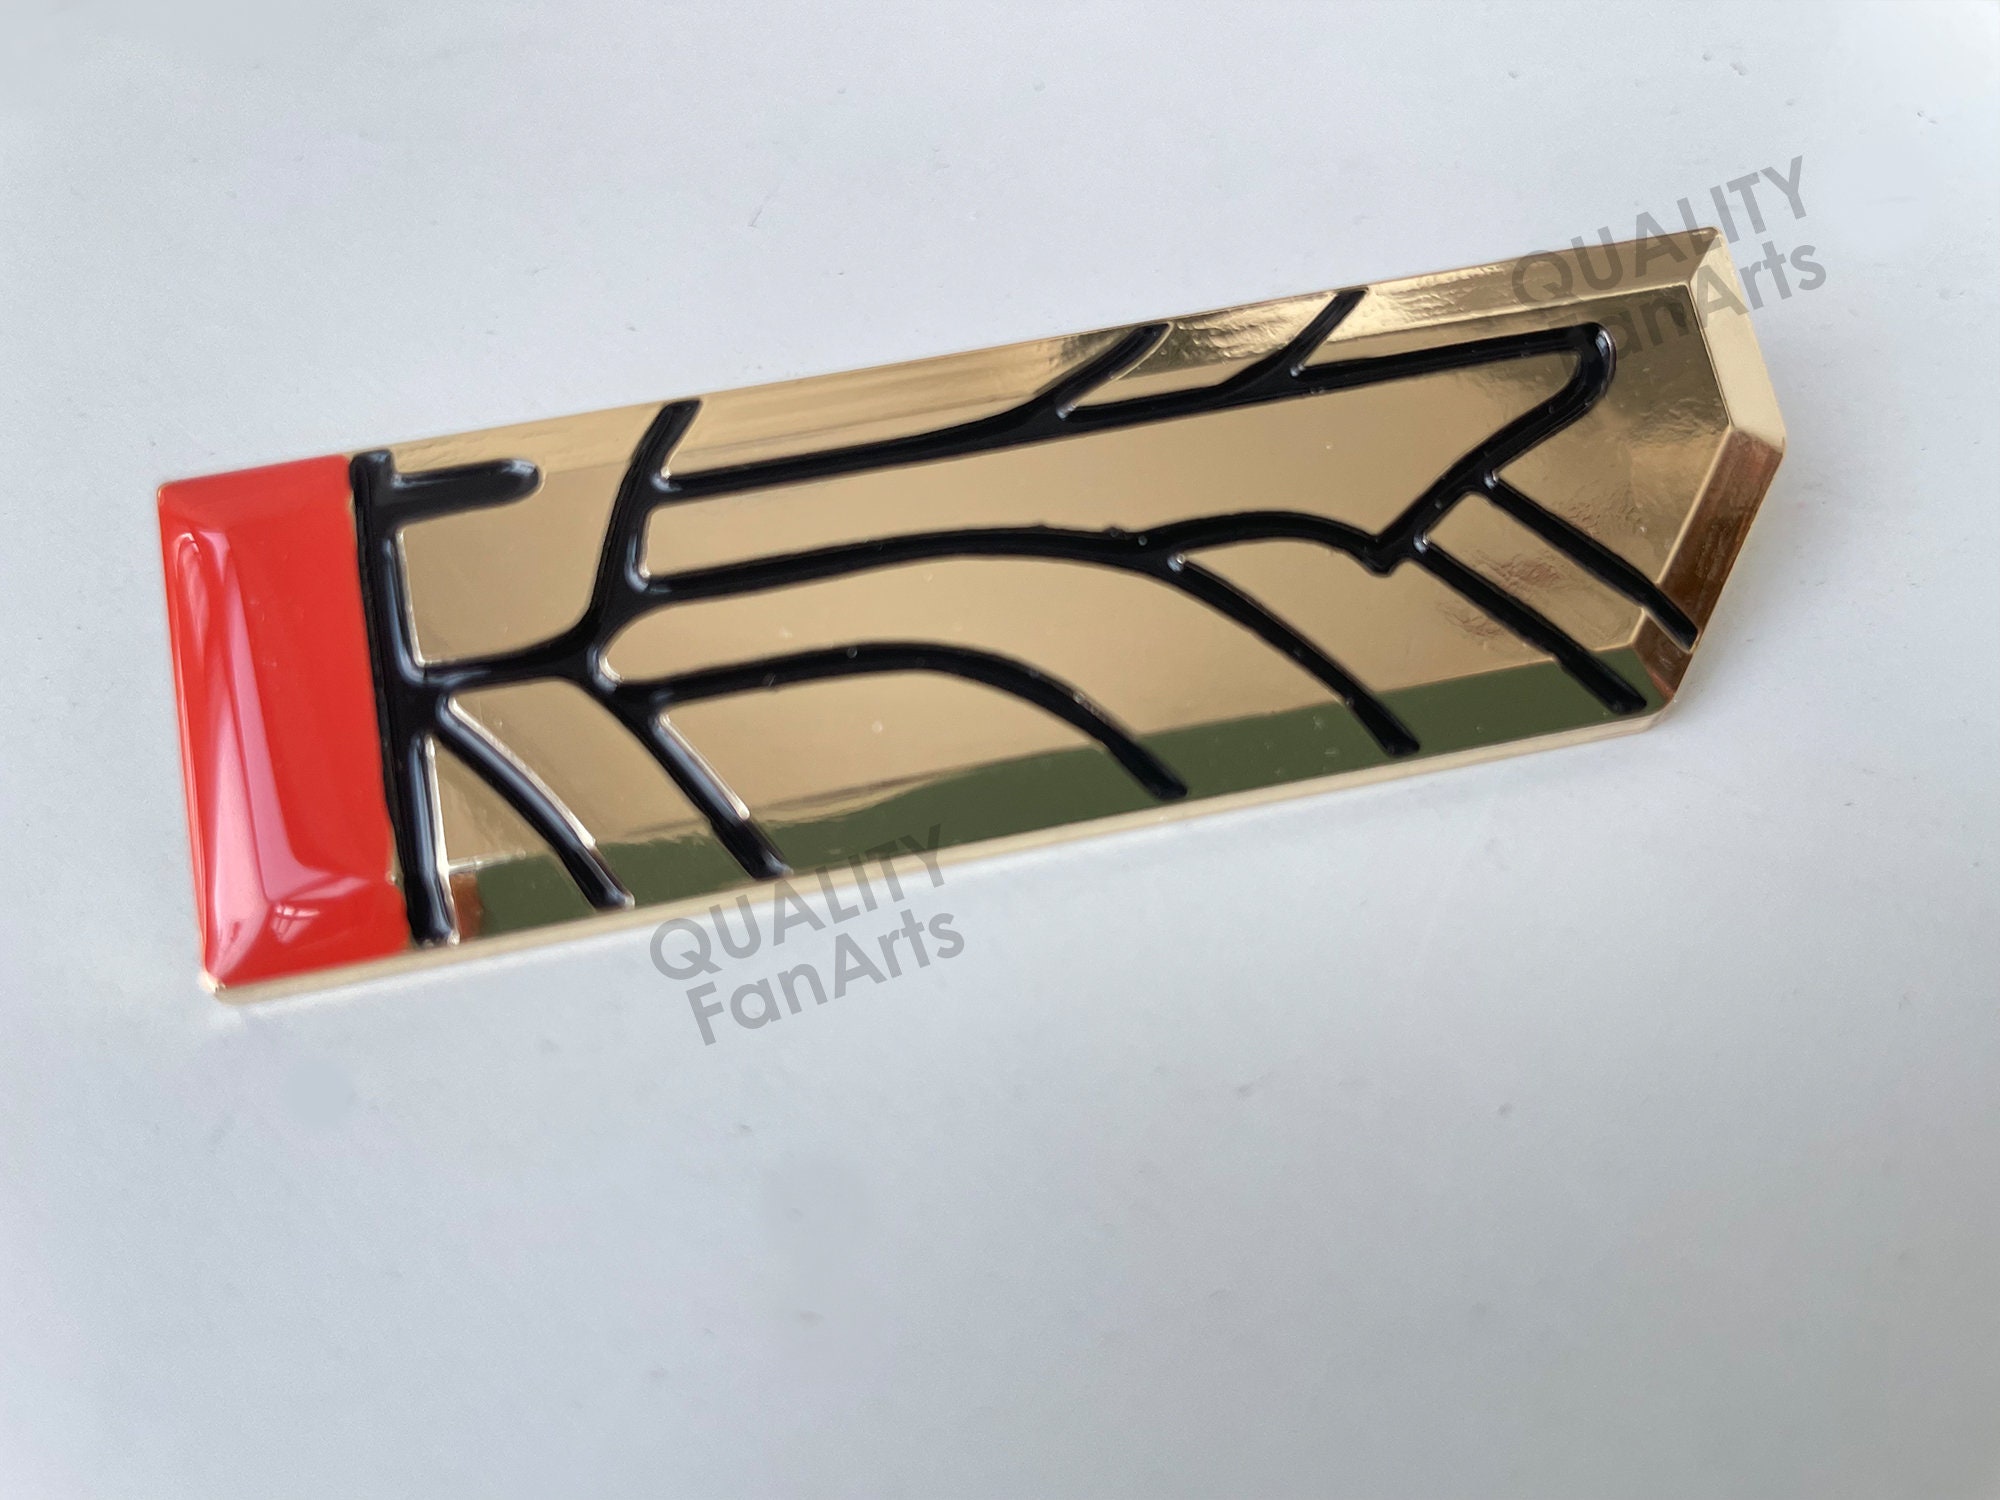 Pom-Pom Badge HSR Button Brooch Shield Hertareum Pins Honkai Star Rail  Gifts - RegisBox